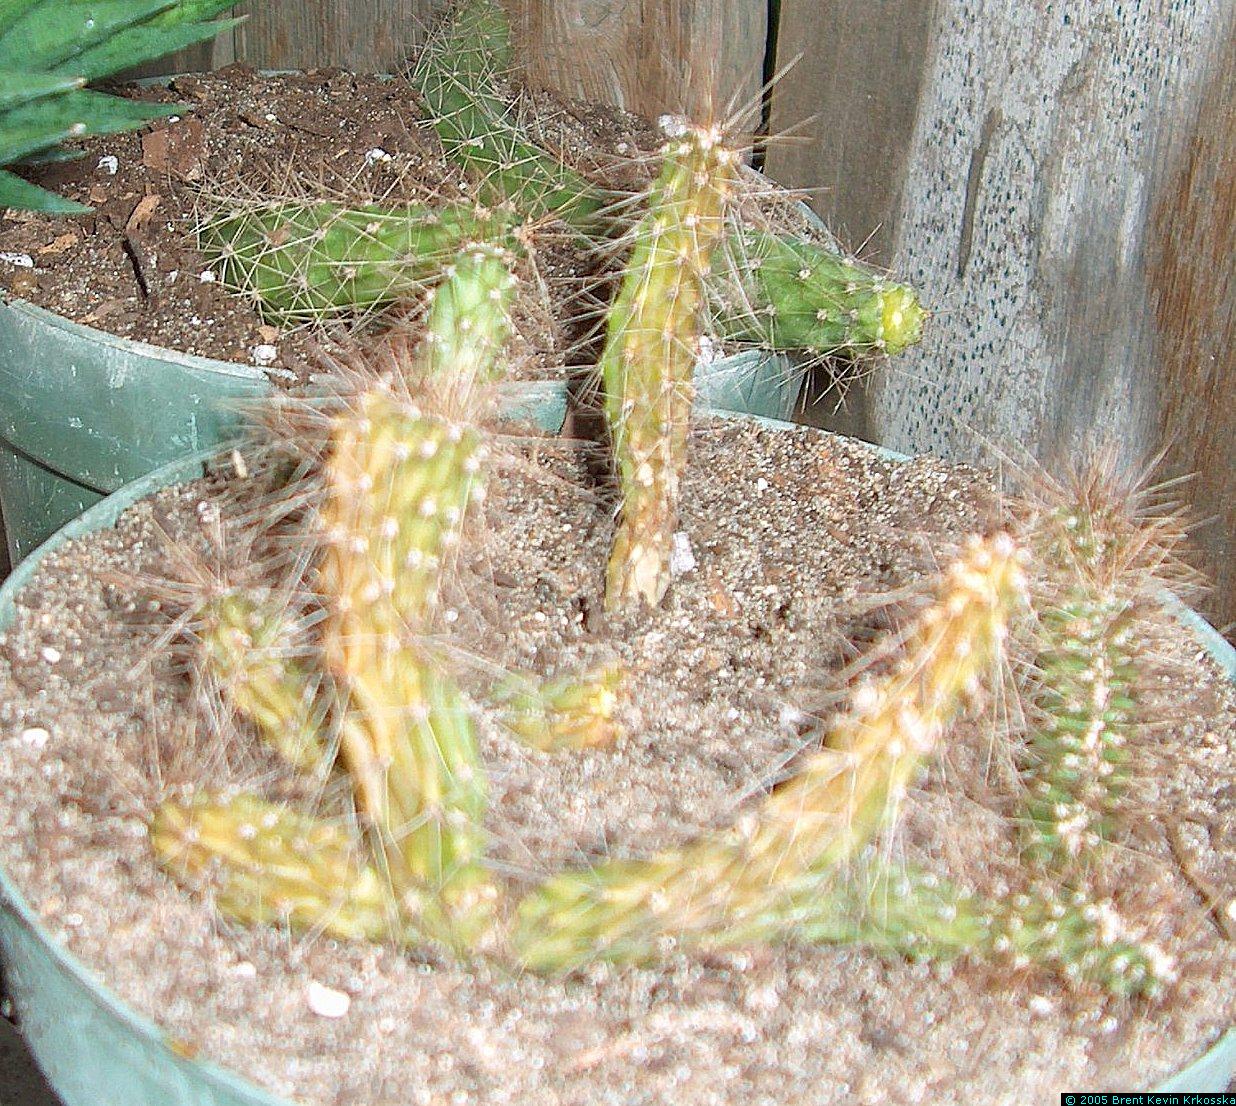 Corryocactus-melanotrichus-cristata-4